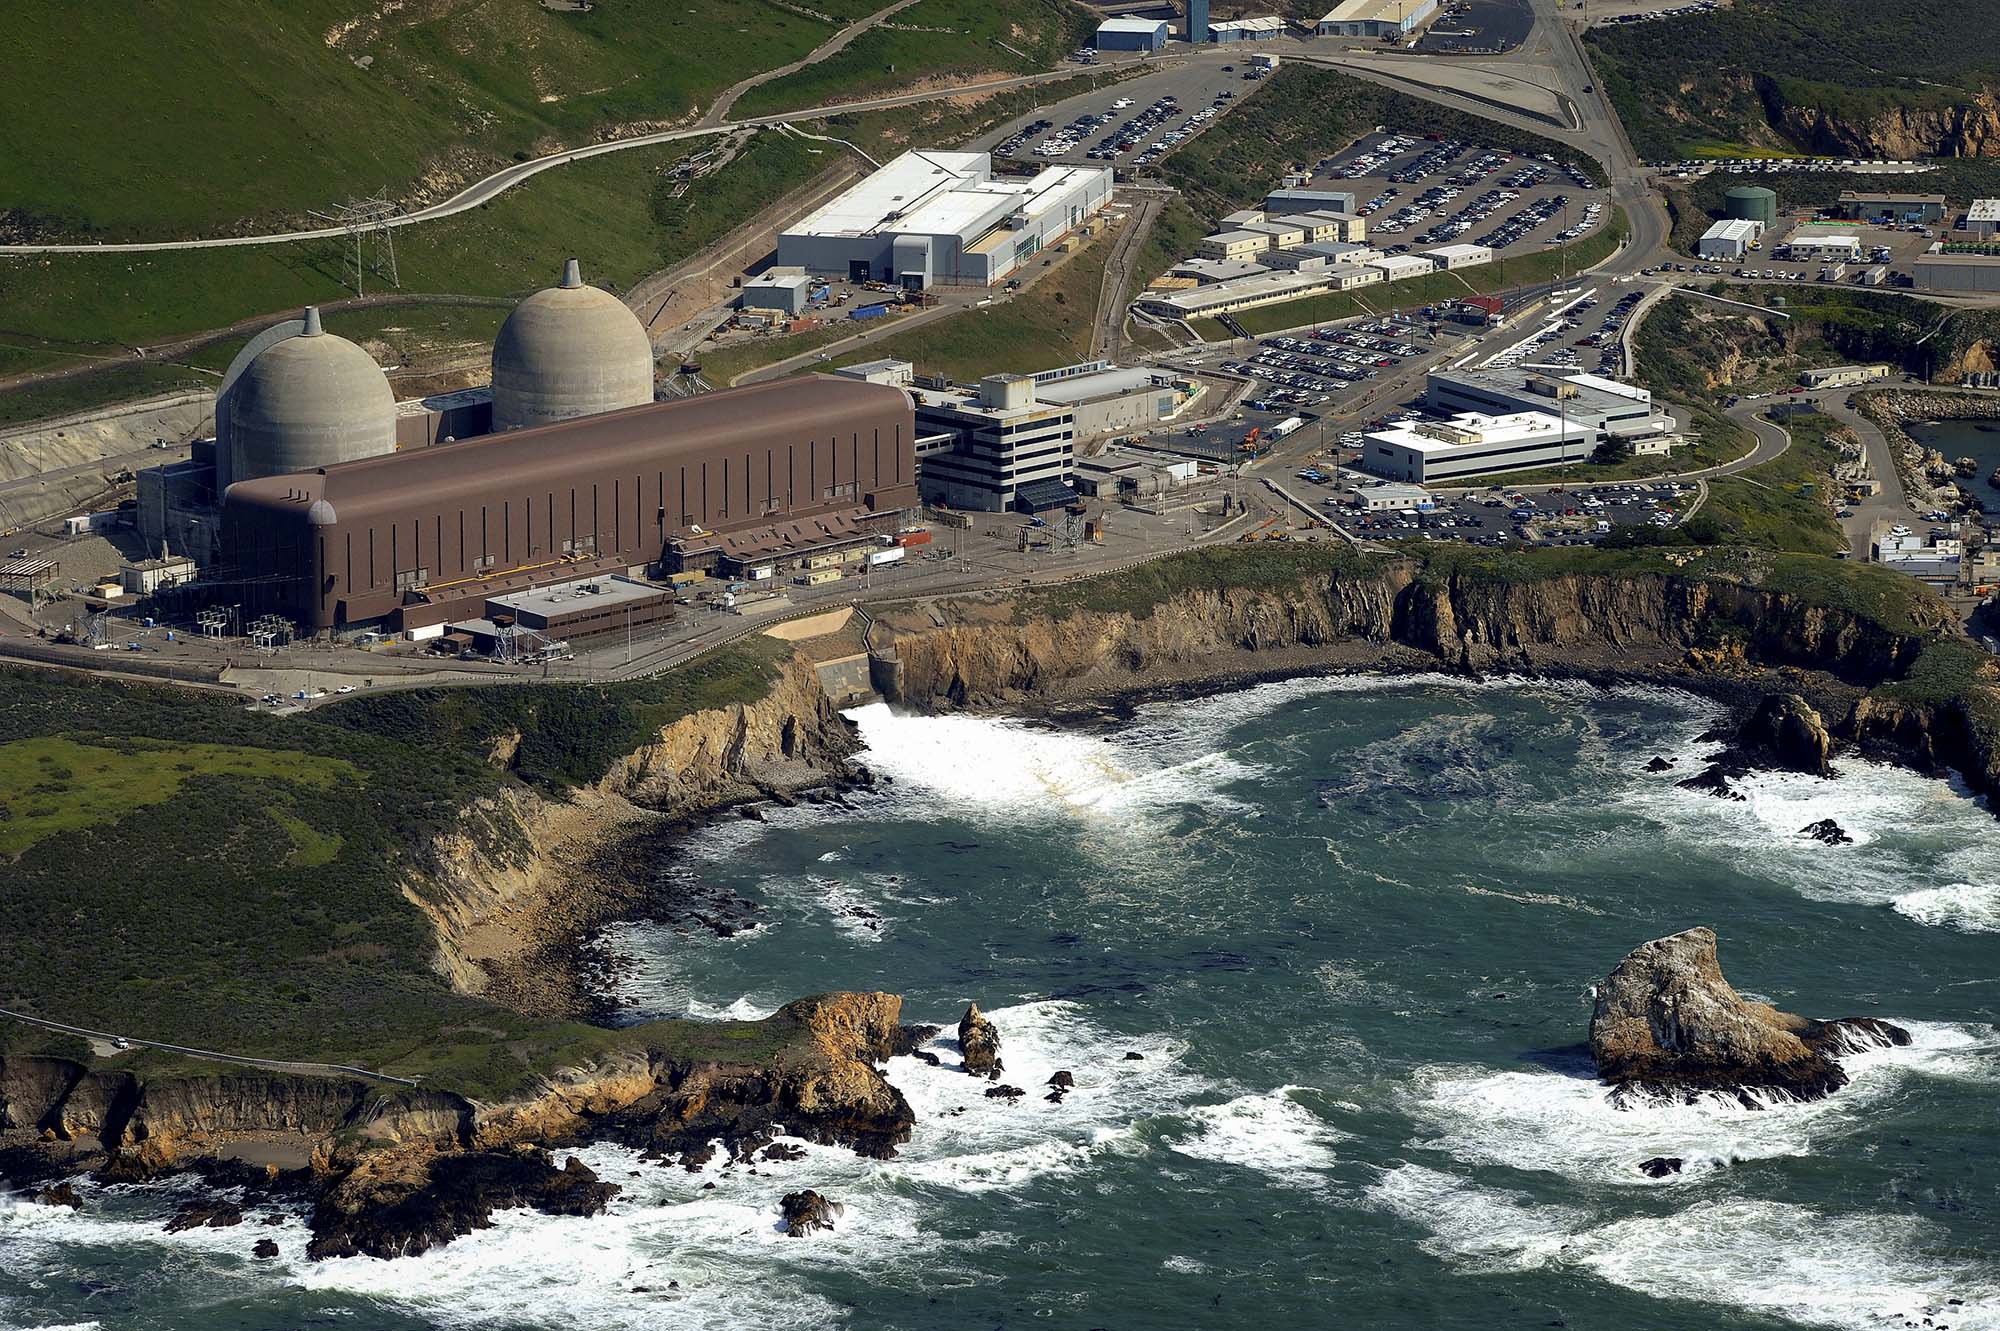 Diablo Canyon Nuclear Power Plant – San Luis Obispo